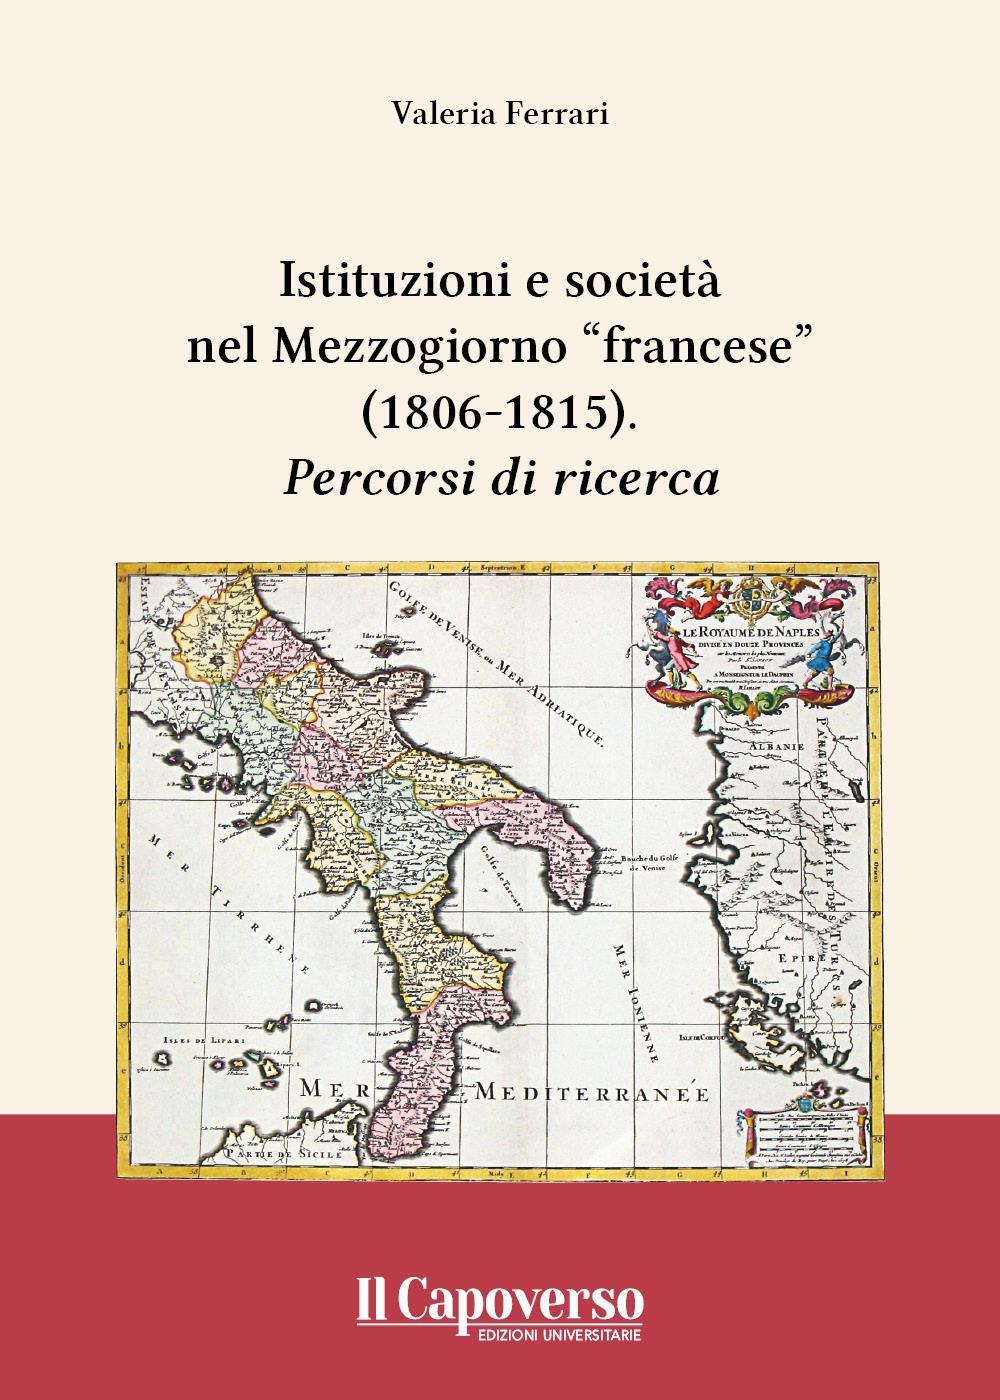 Istituzioni e società nel Mezzogiorno “francese” (1806-1815)